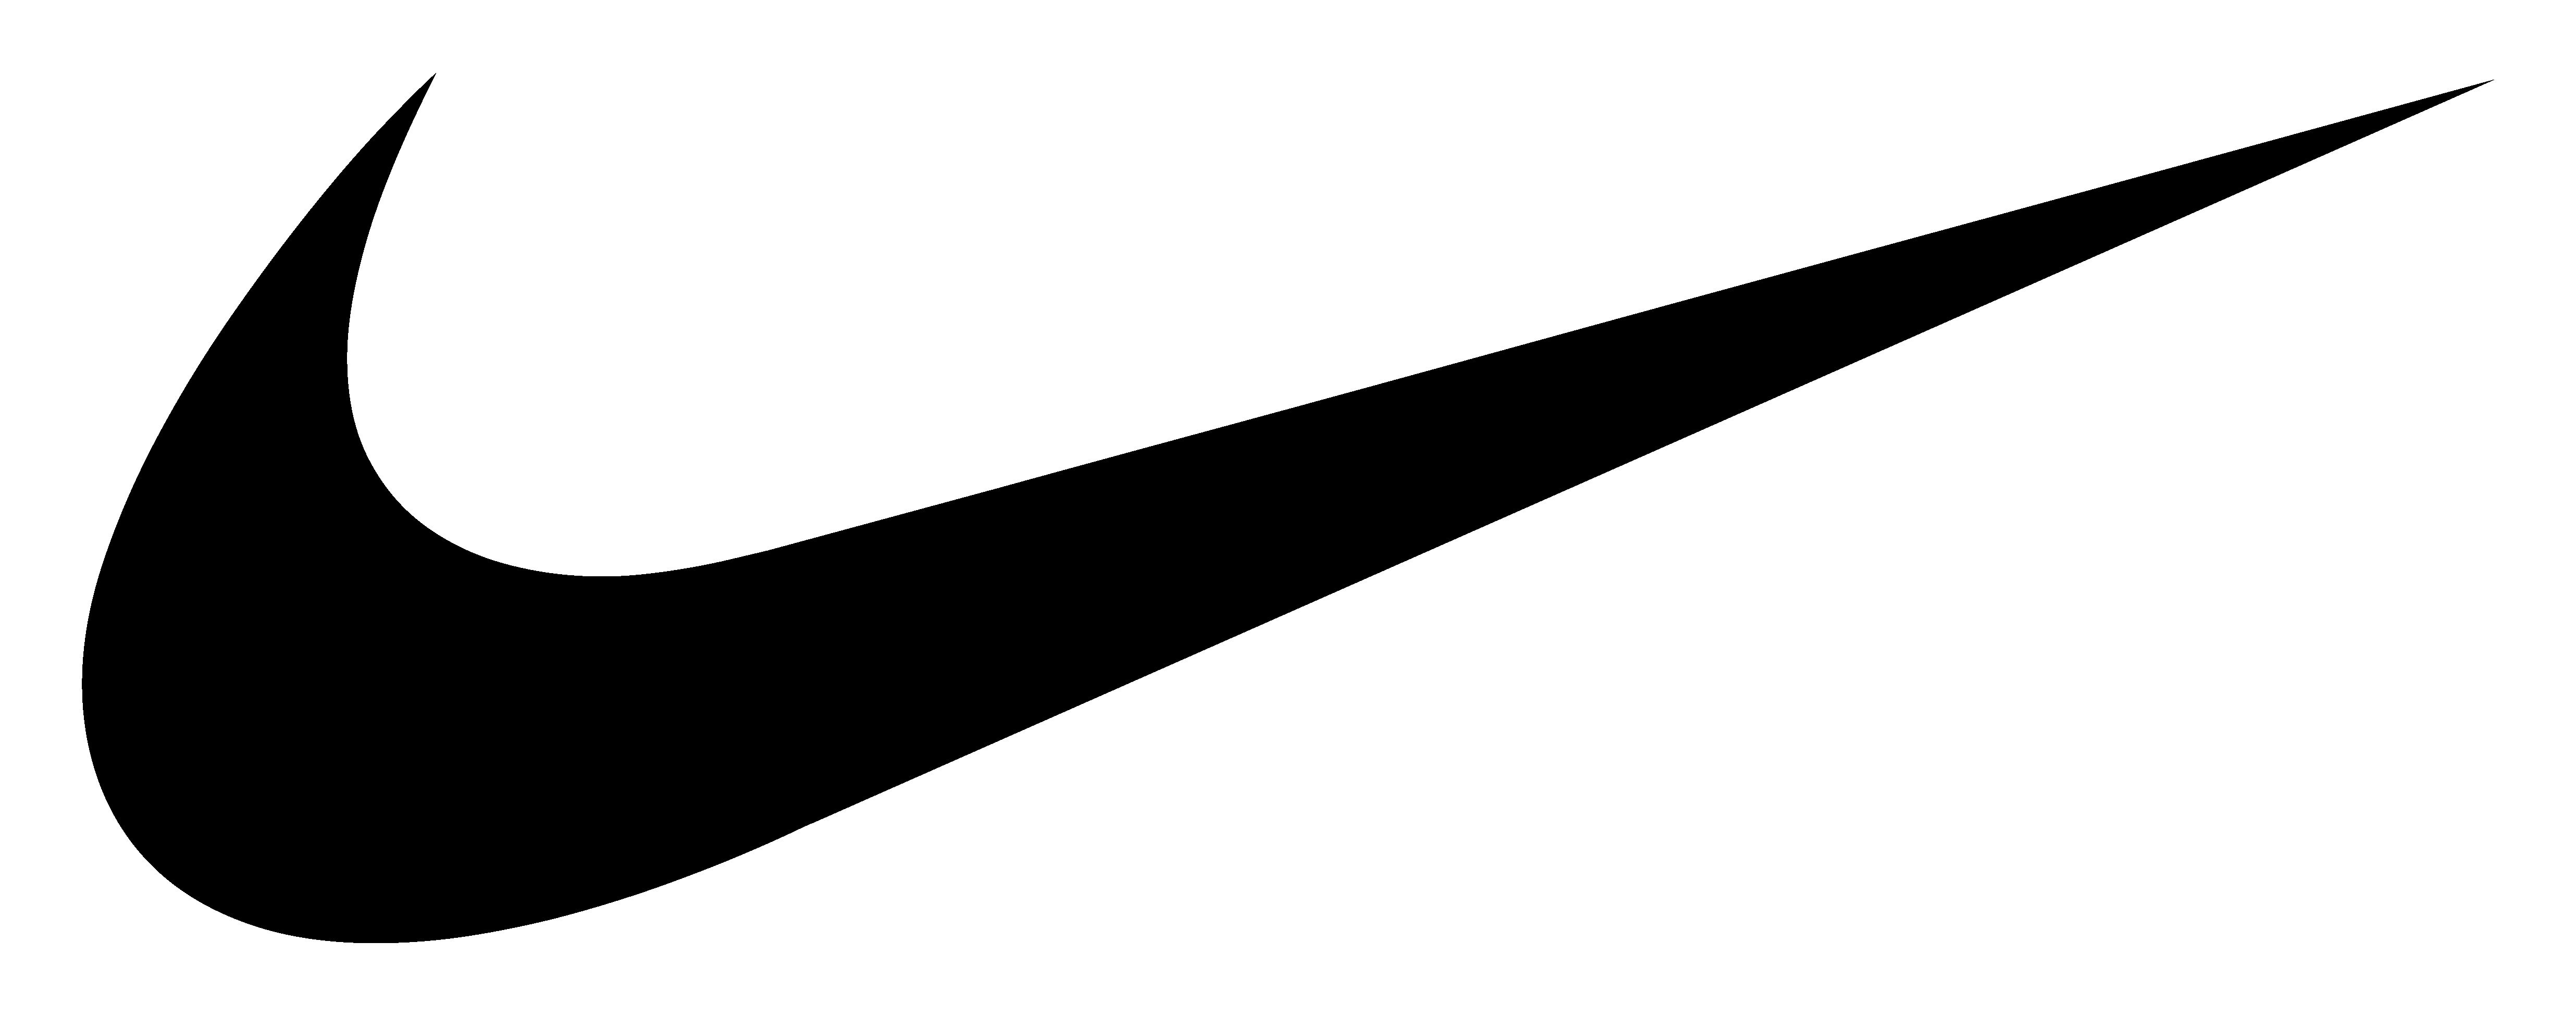 Nike Logo PNG Images, Free Nike Logo Download - Free Transparent PNG Logos